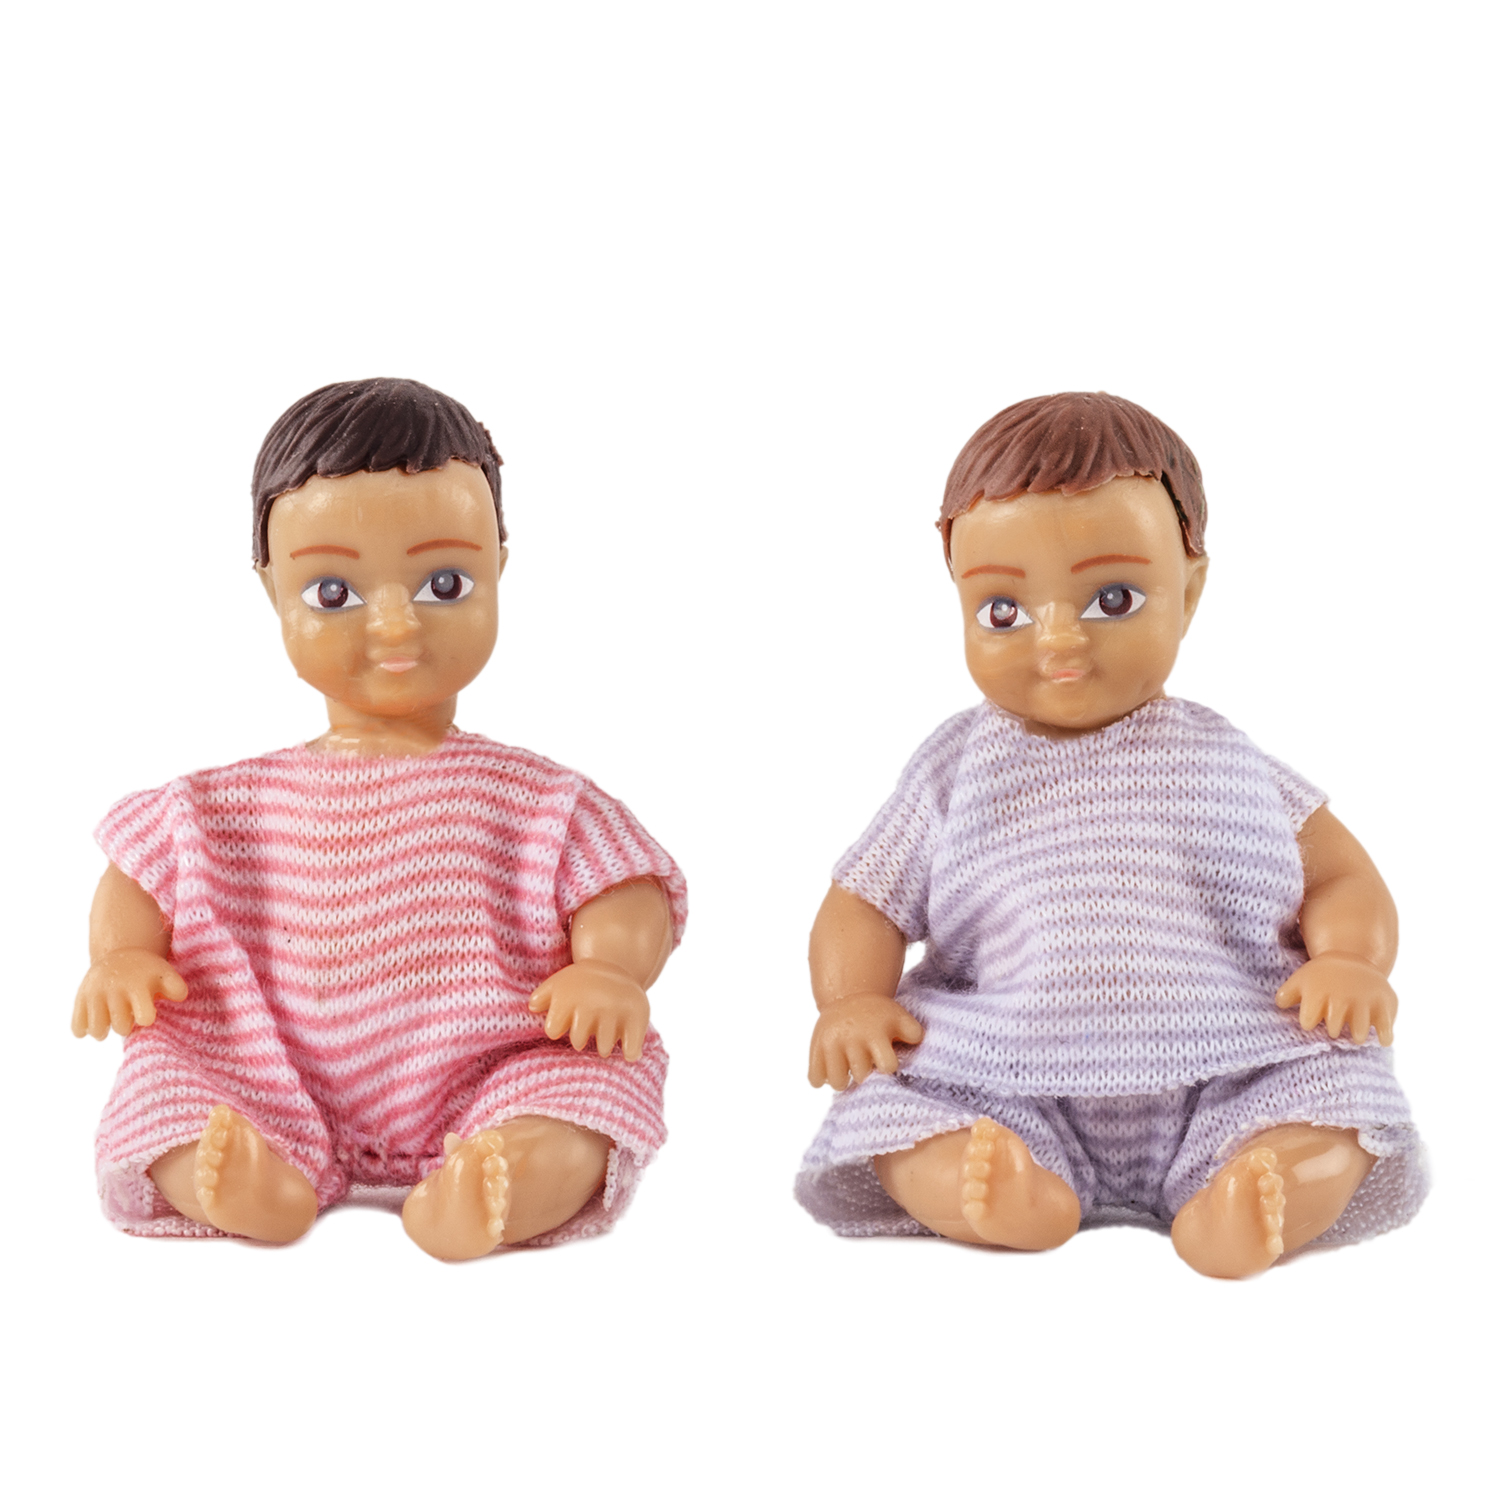 Lundby lundby dollhouse dolls 2 babies